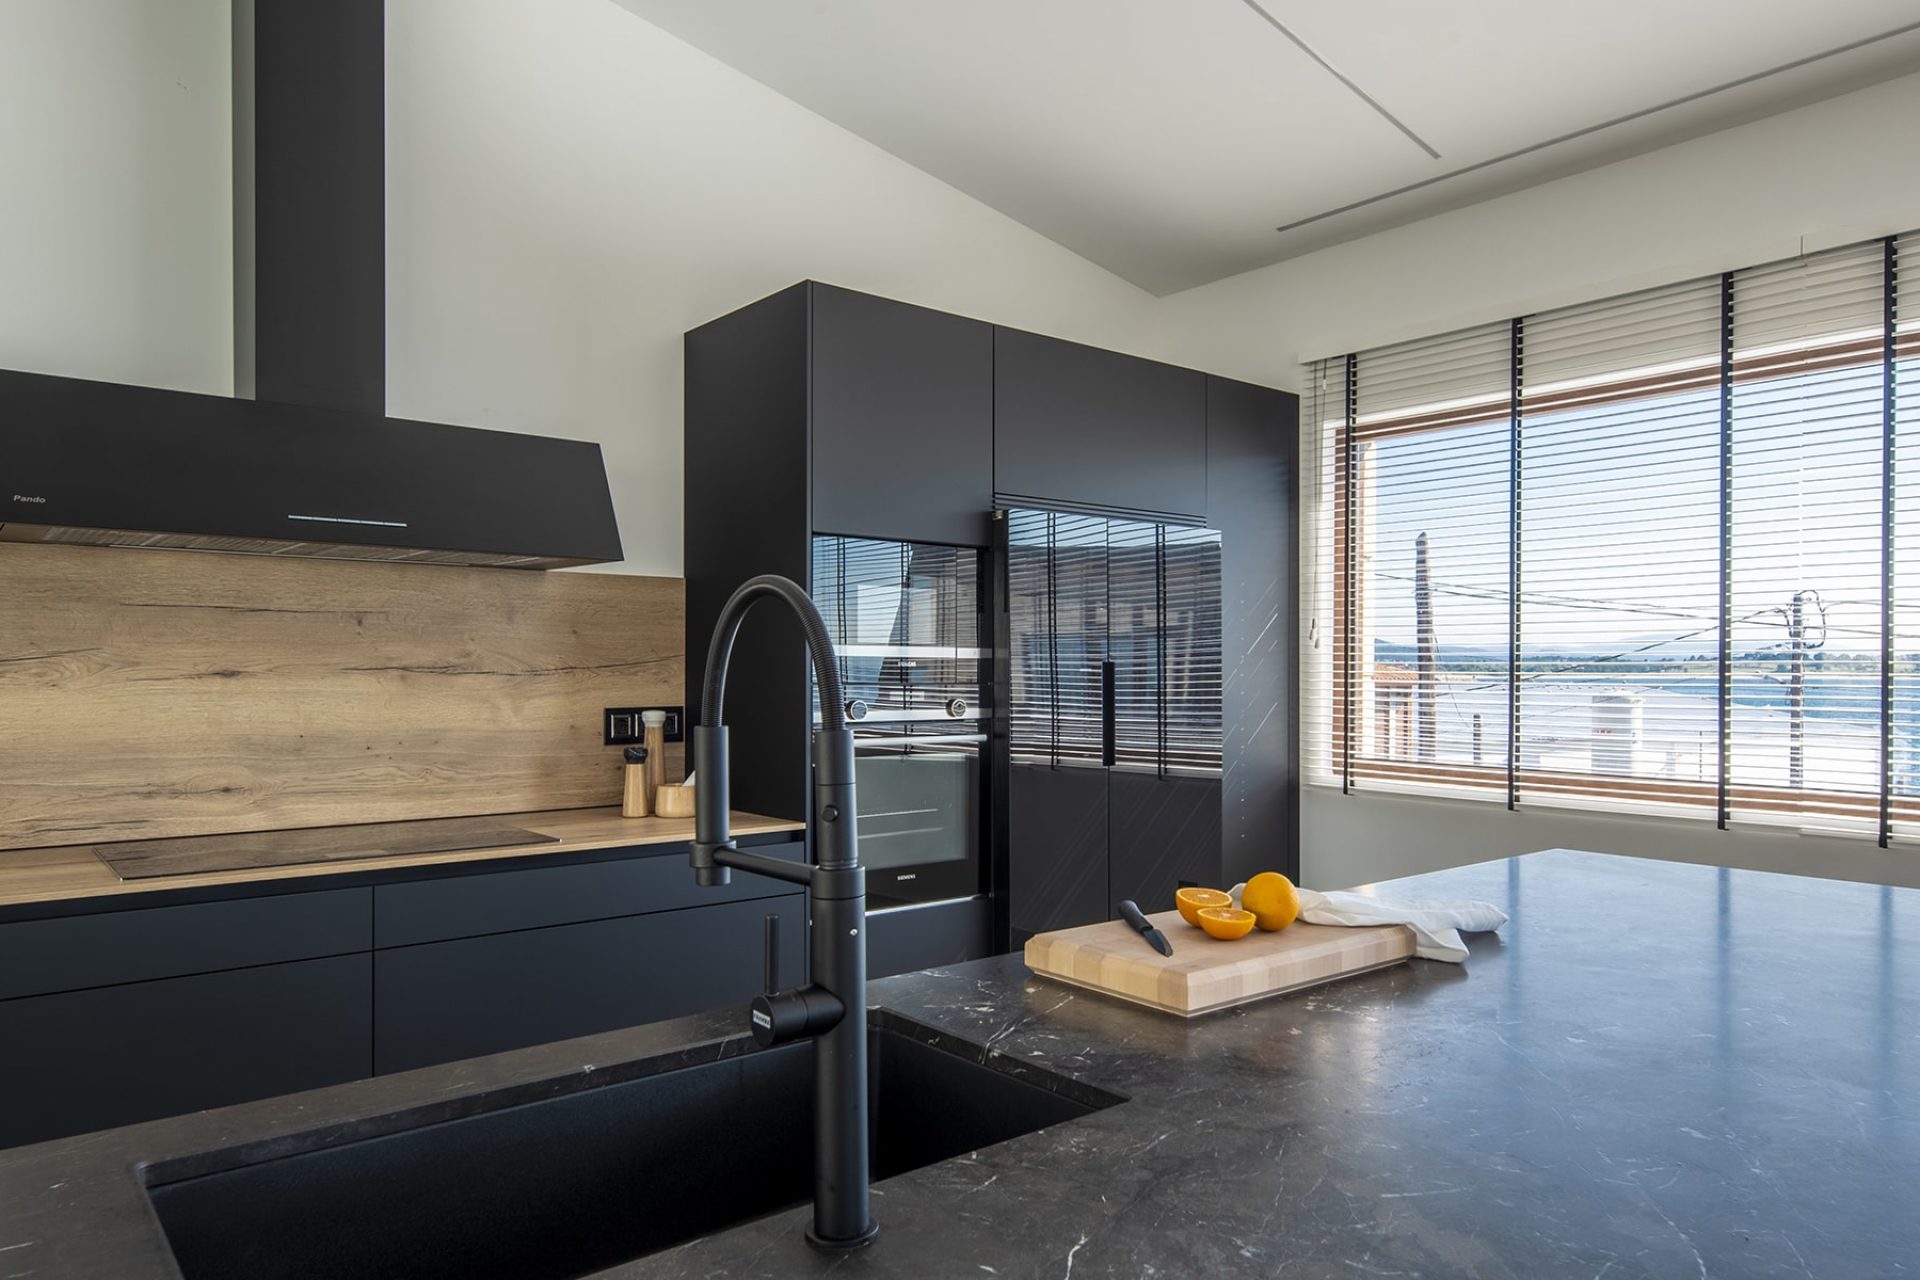 Proyecto de cocina negro mate con detalles en acabado madera clara de roble y electrodomésticos negros integrados